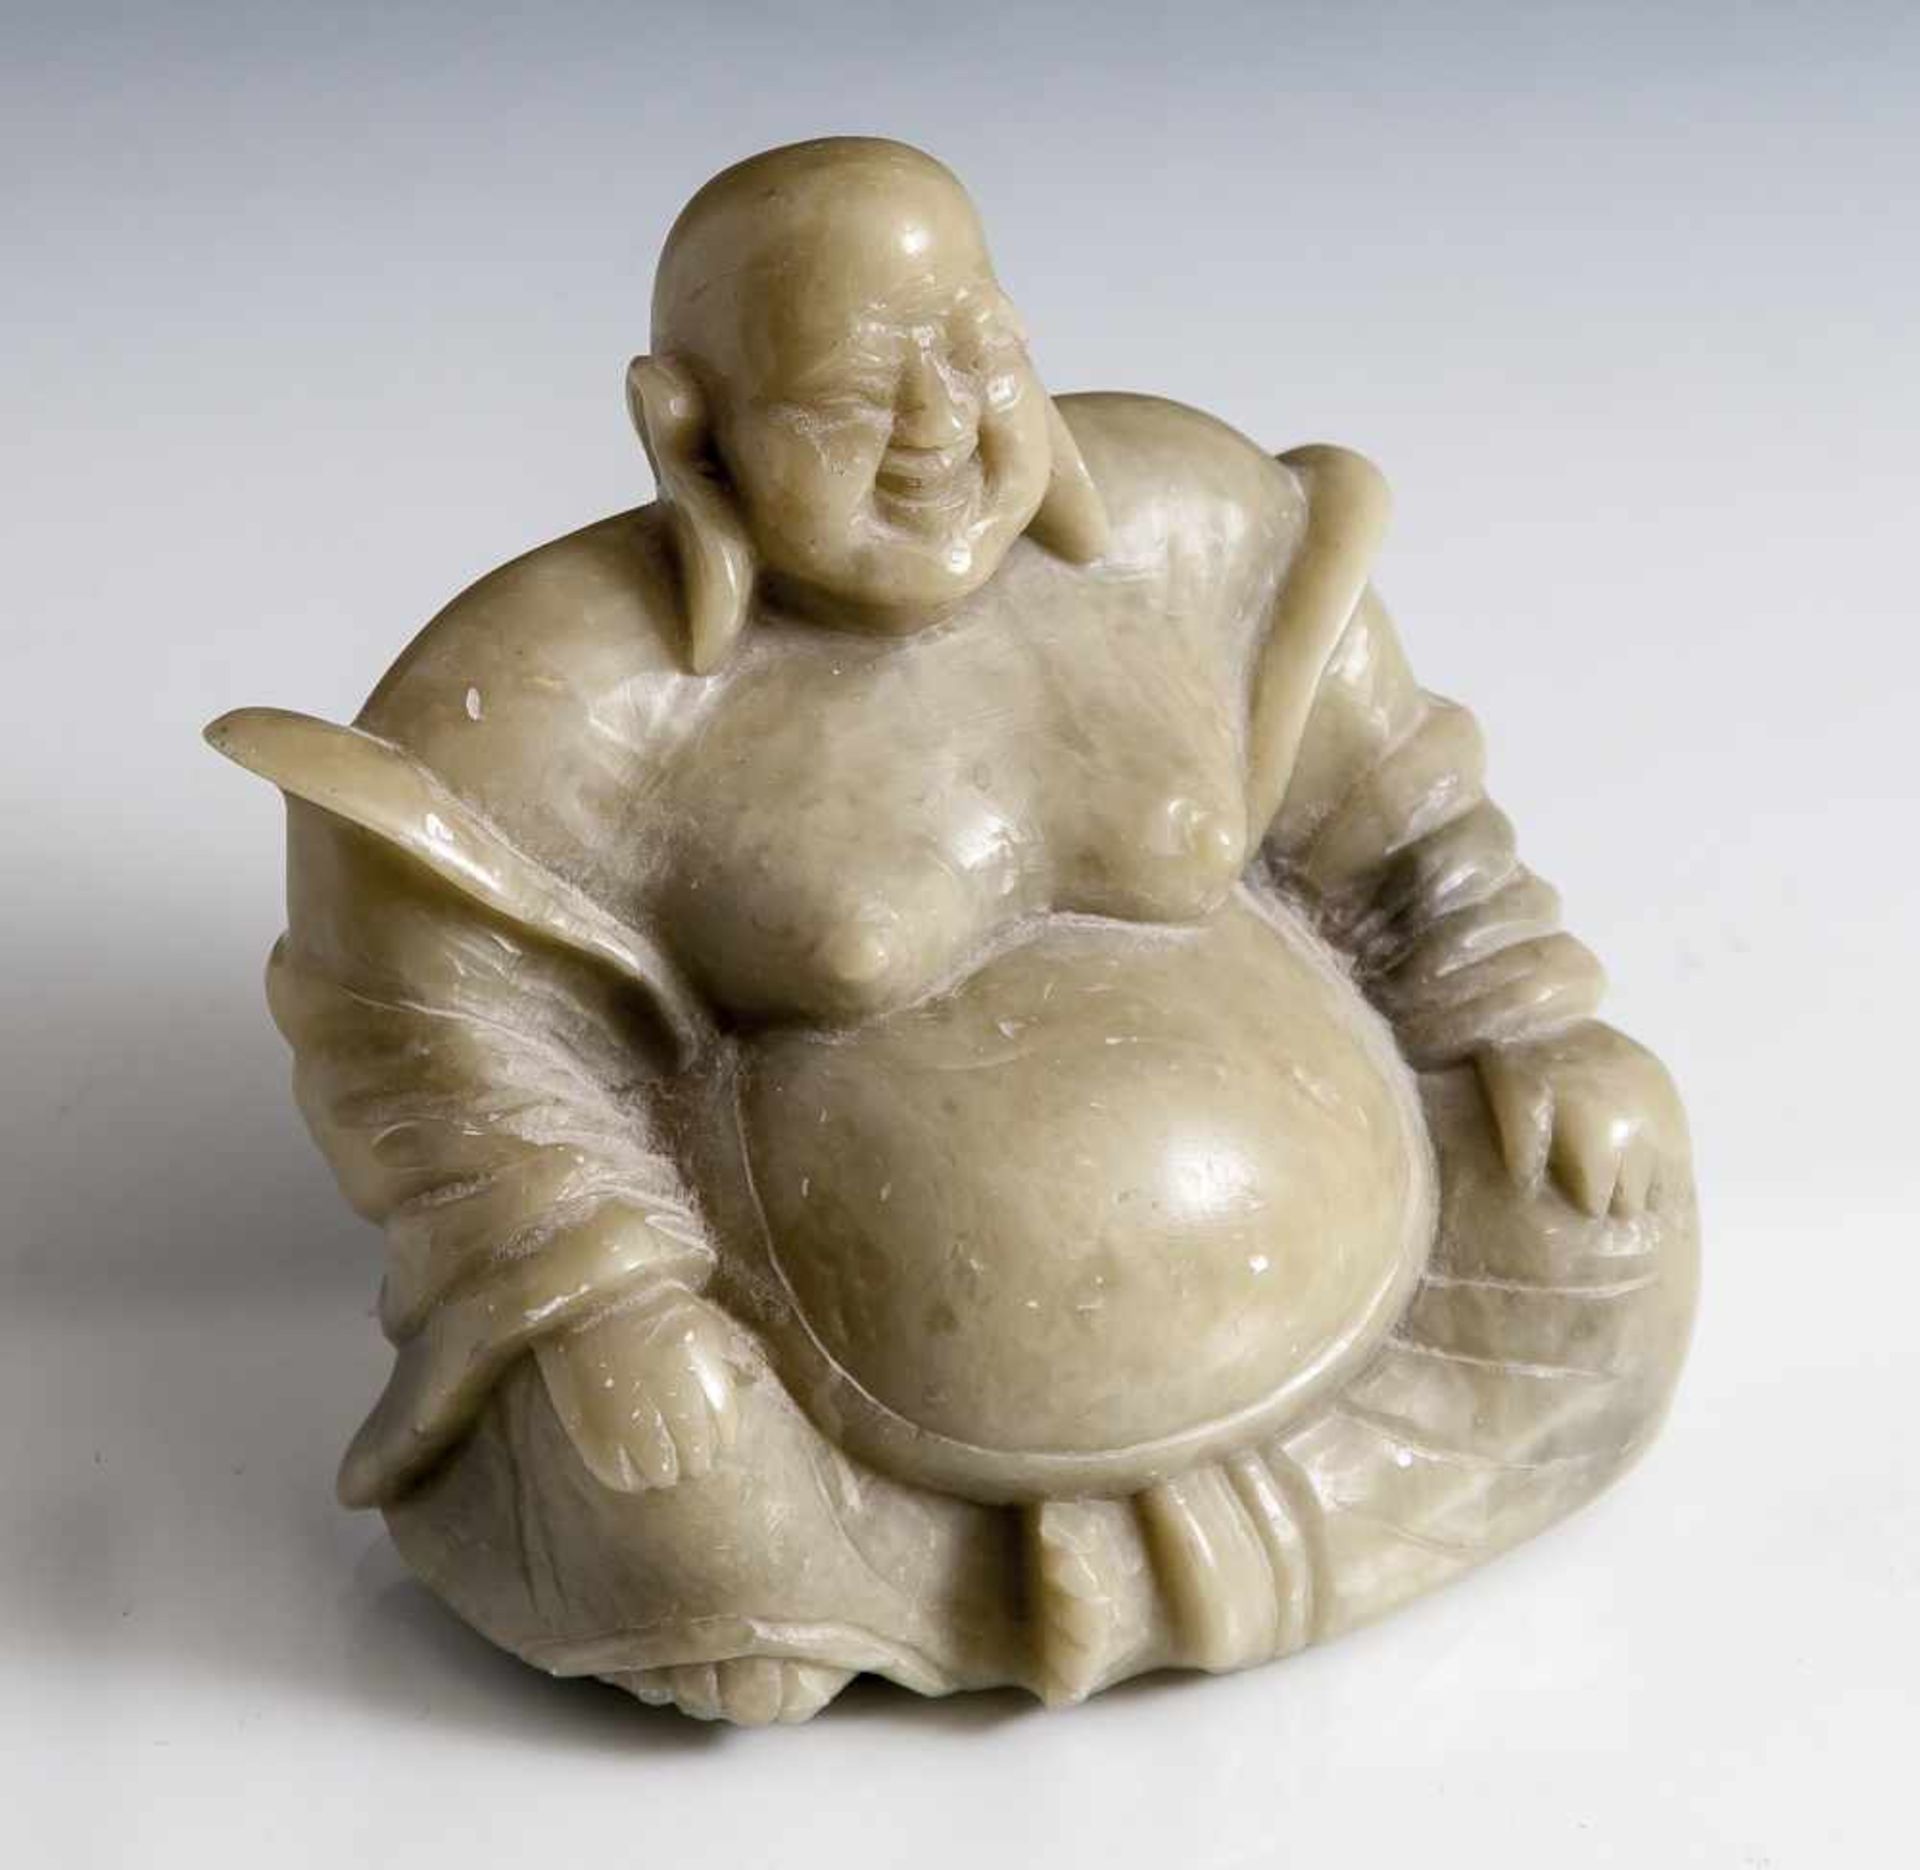 Figurine, Budai, grüner Speckstein, sitzender Buddha mit lachendem Gesichtsausdruck. H. ca. 9,5